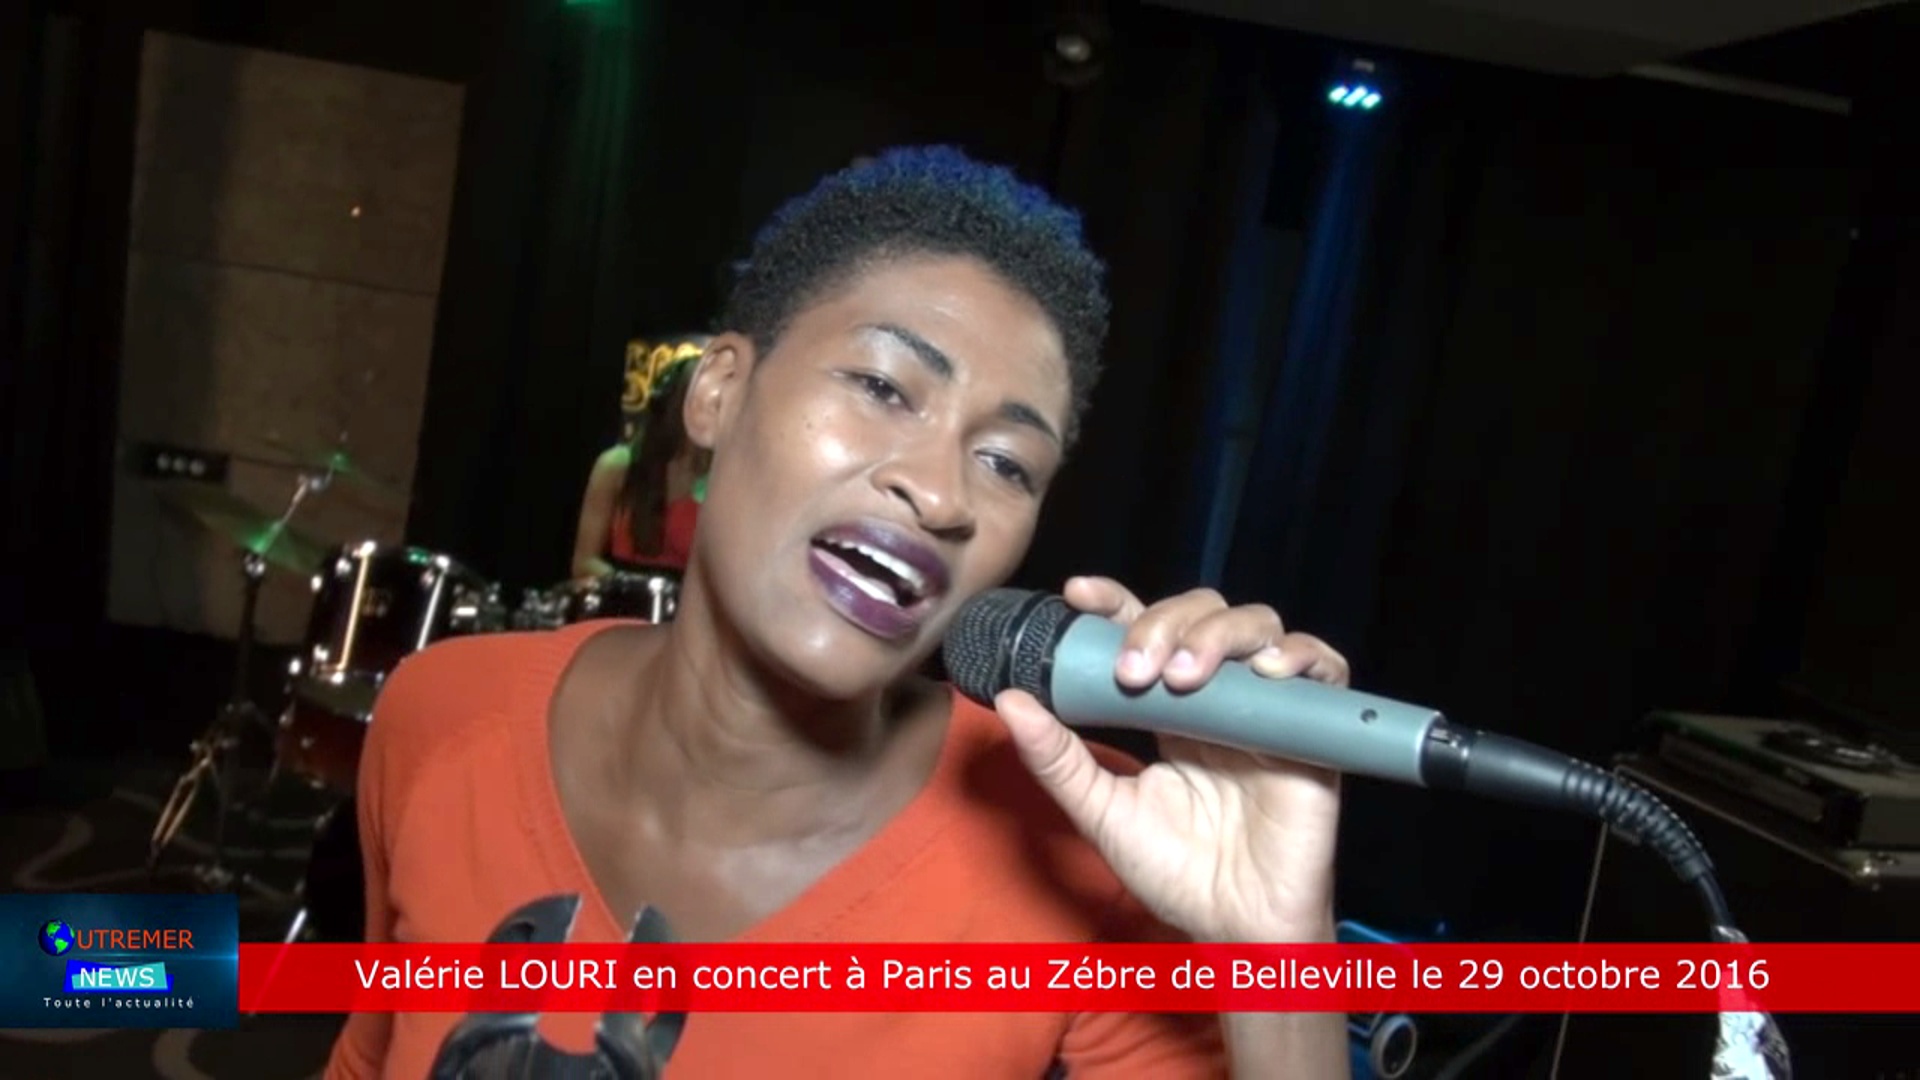 [Vidéo] HEXAGONE. Interview de Valérie LOURI en concert à Paris au zèbre de Belleville le 29 octobre